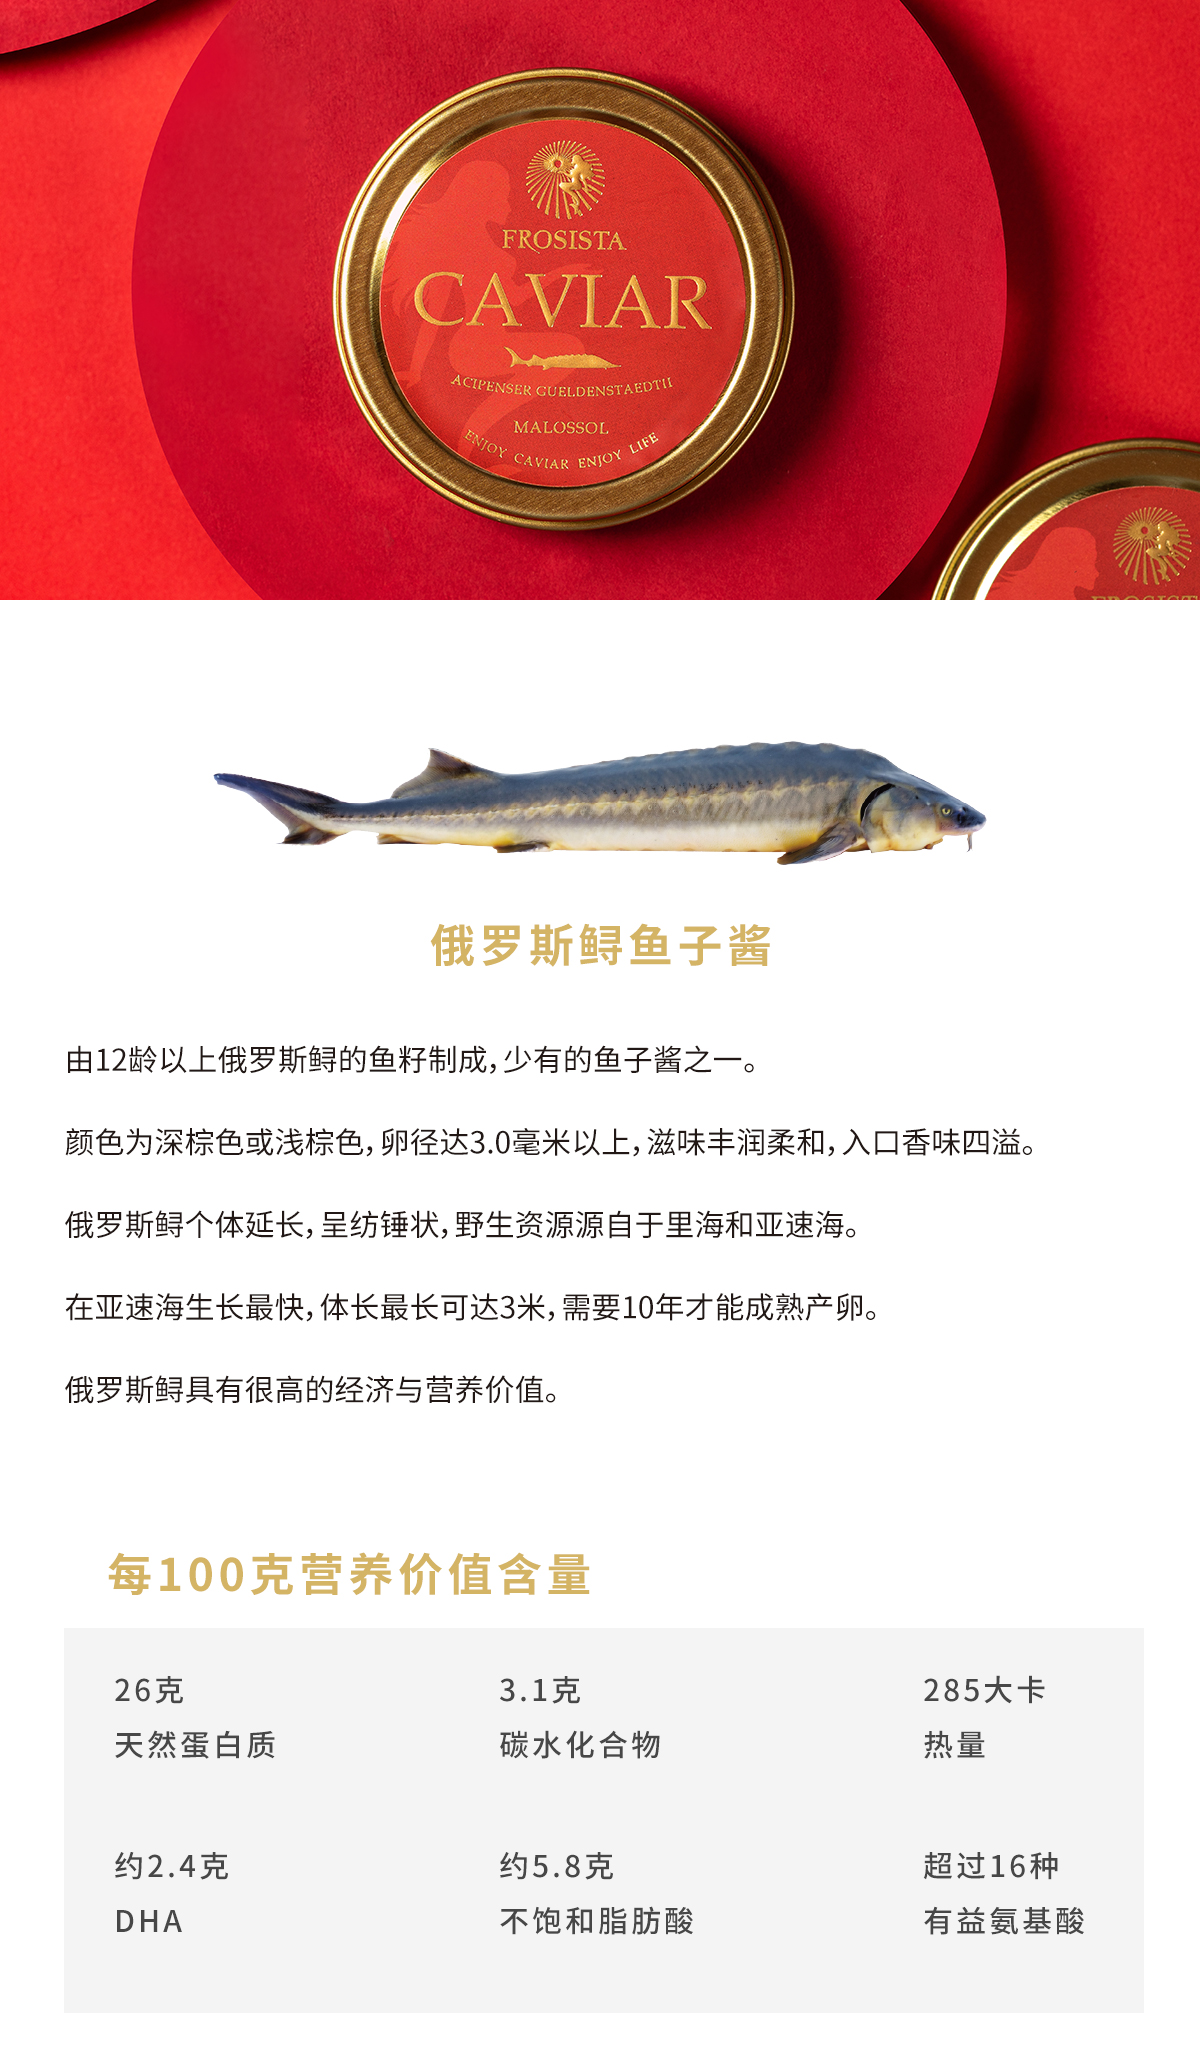 俄食品质量认证机构介绍如何挑选红鱼子酱 - 2019年12月20日, 俄罗斯卫星通讯社